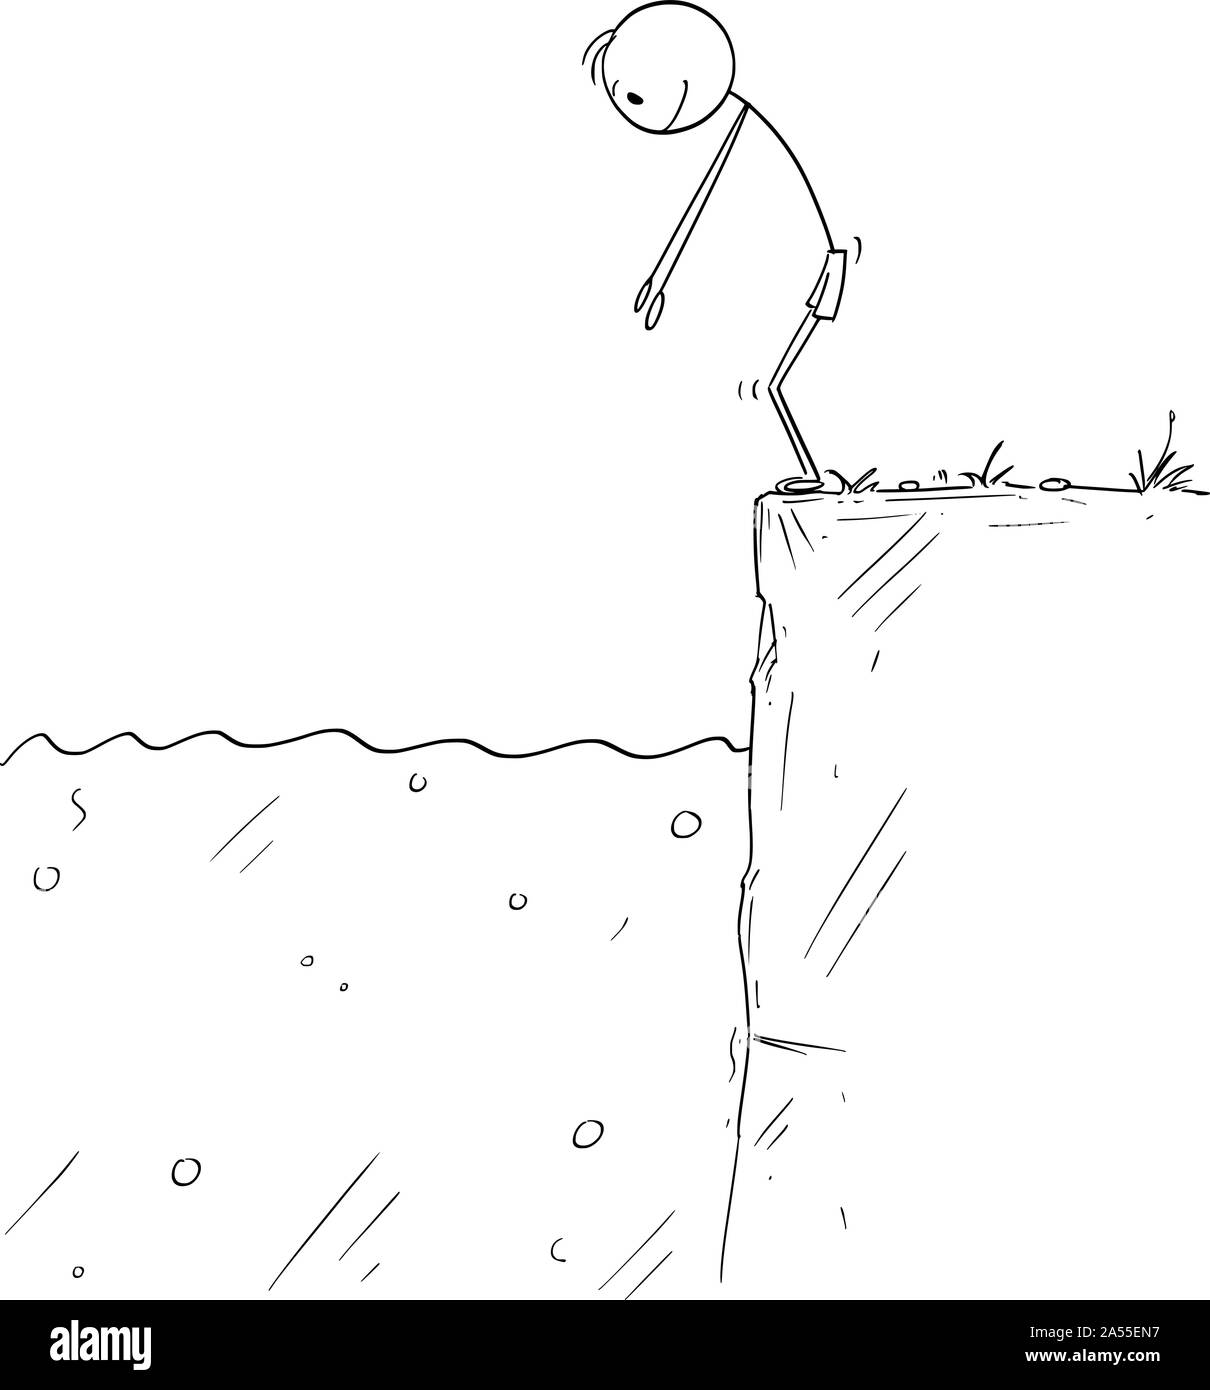 Vector cartoon stick figura disegno illustrazione concettuale dell'uomo o nuotatore pronti a saltare in acqua. Illustrazione Vettoriale